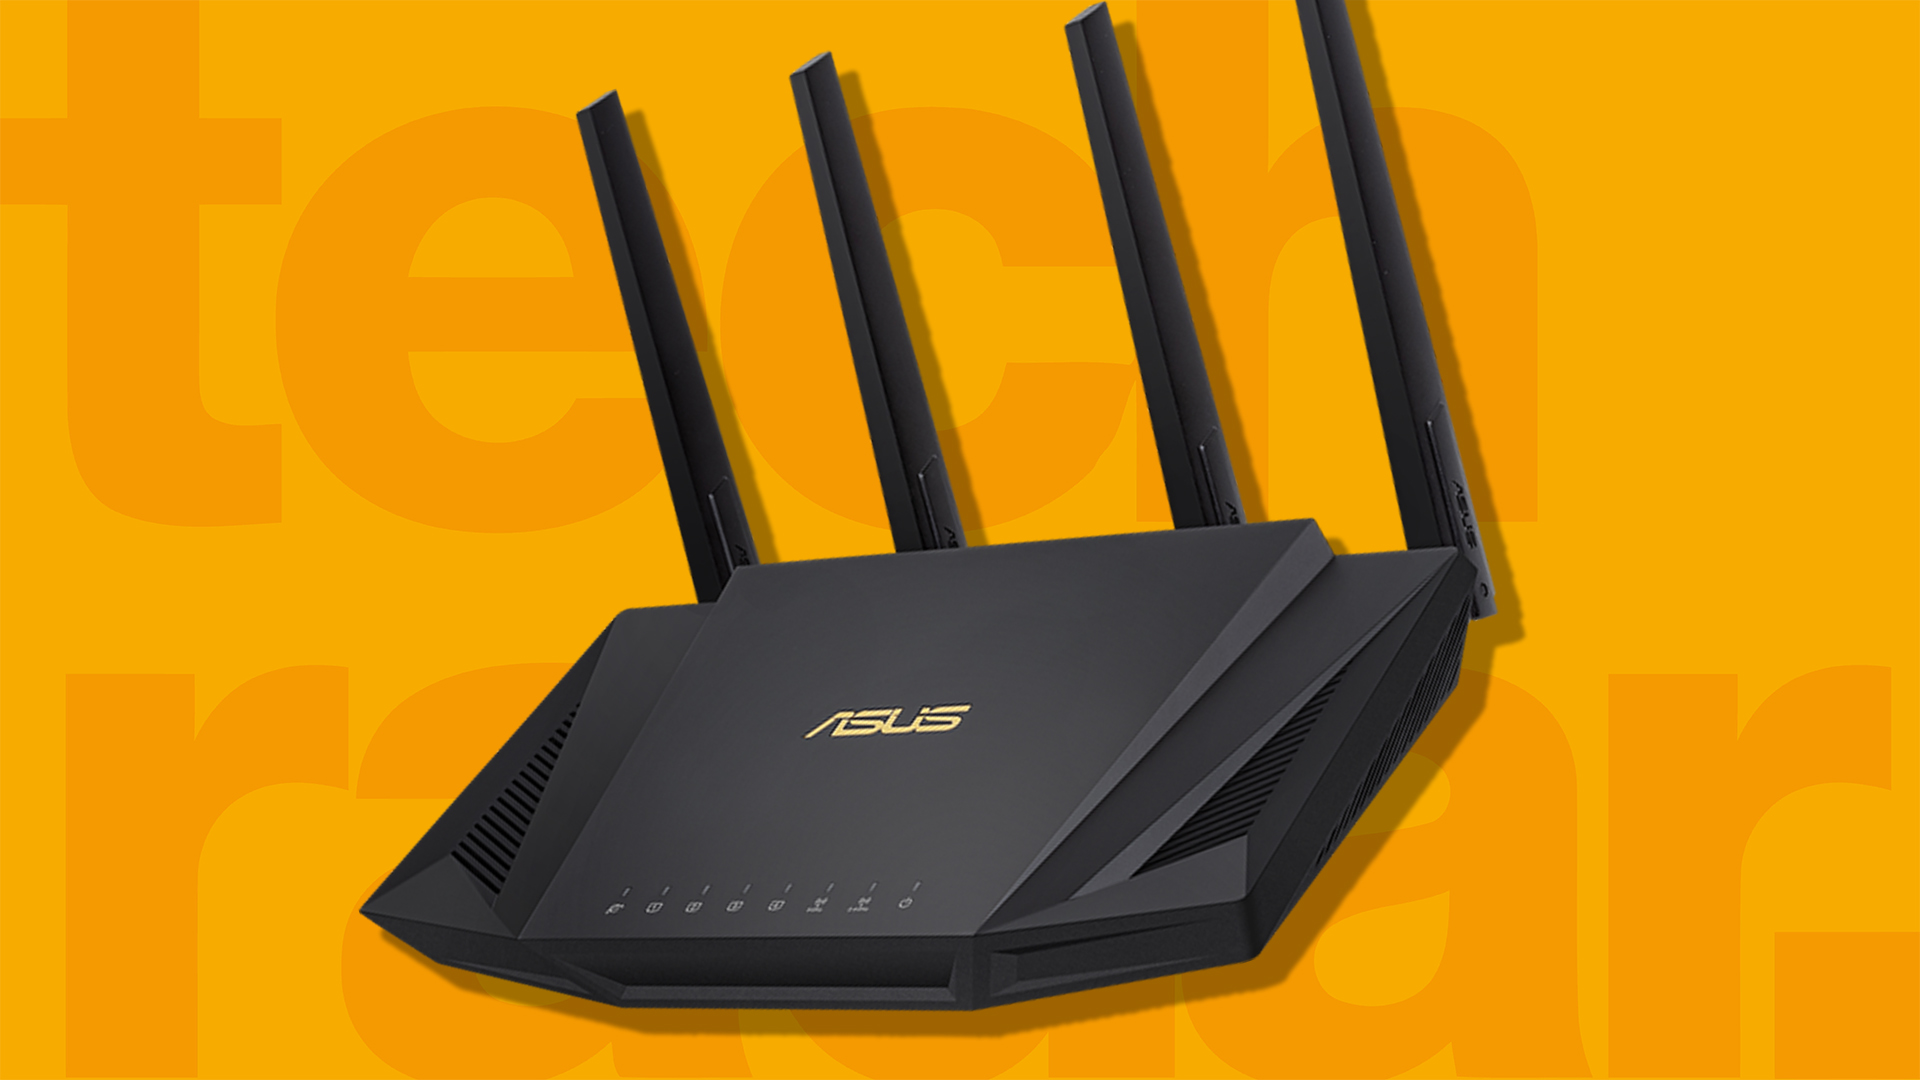 Diakritisch Het begin Reageren The best Asus router 2023: top gaming routers from Asus | TechRadar